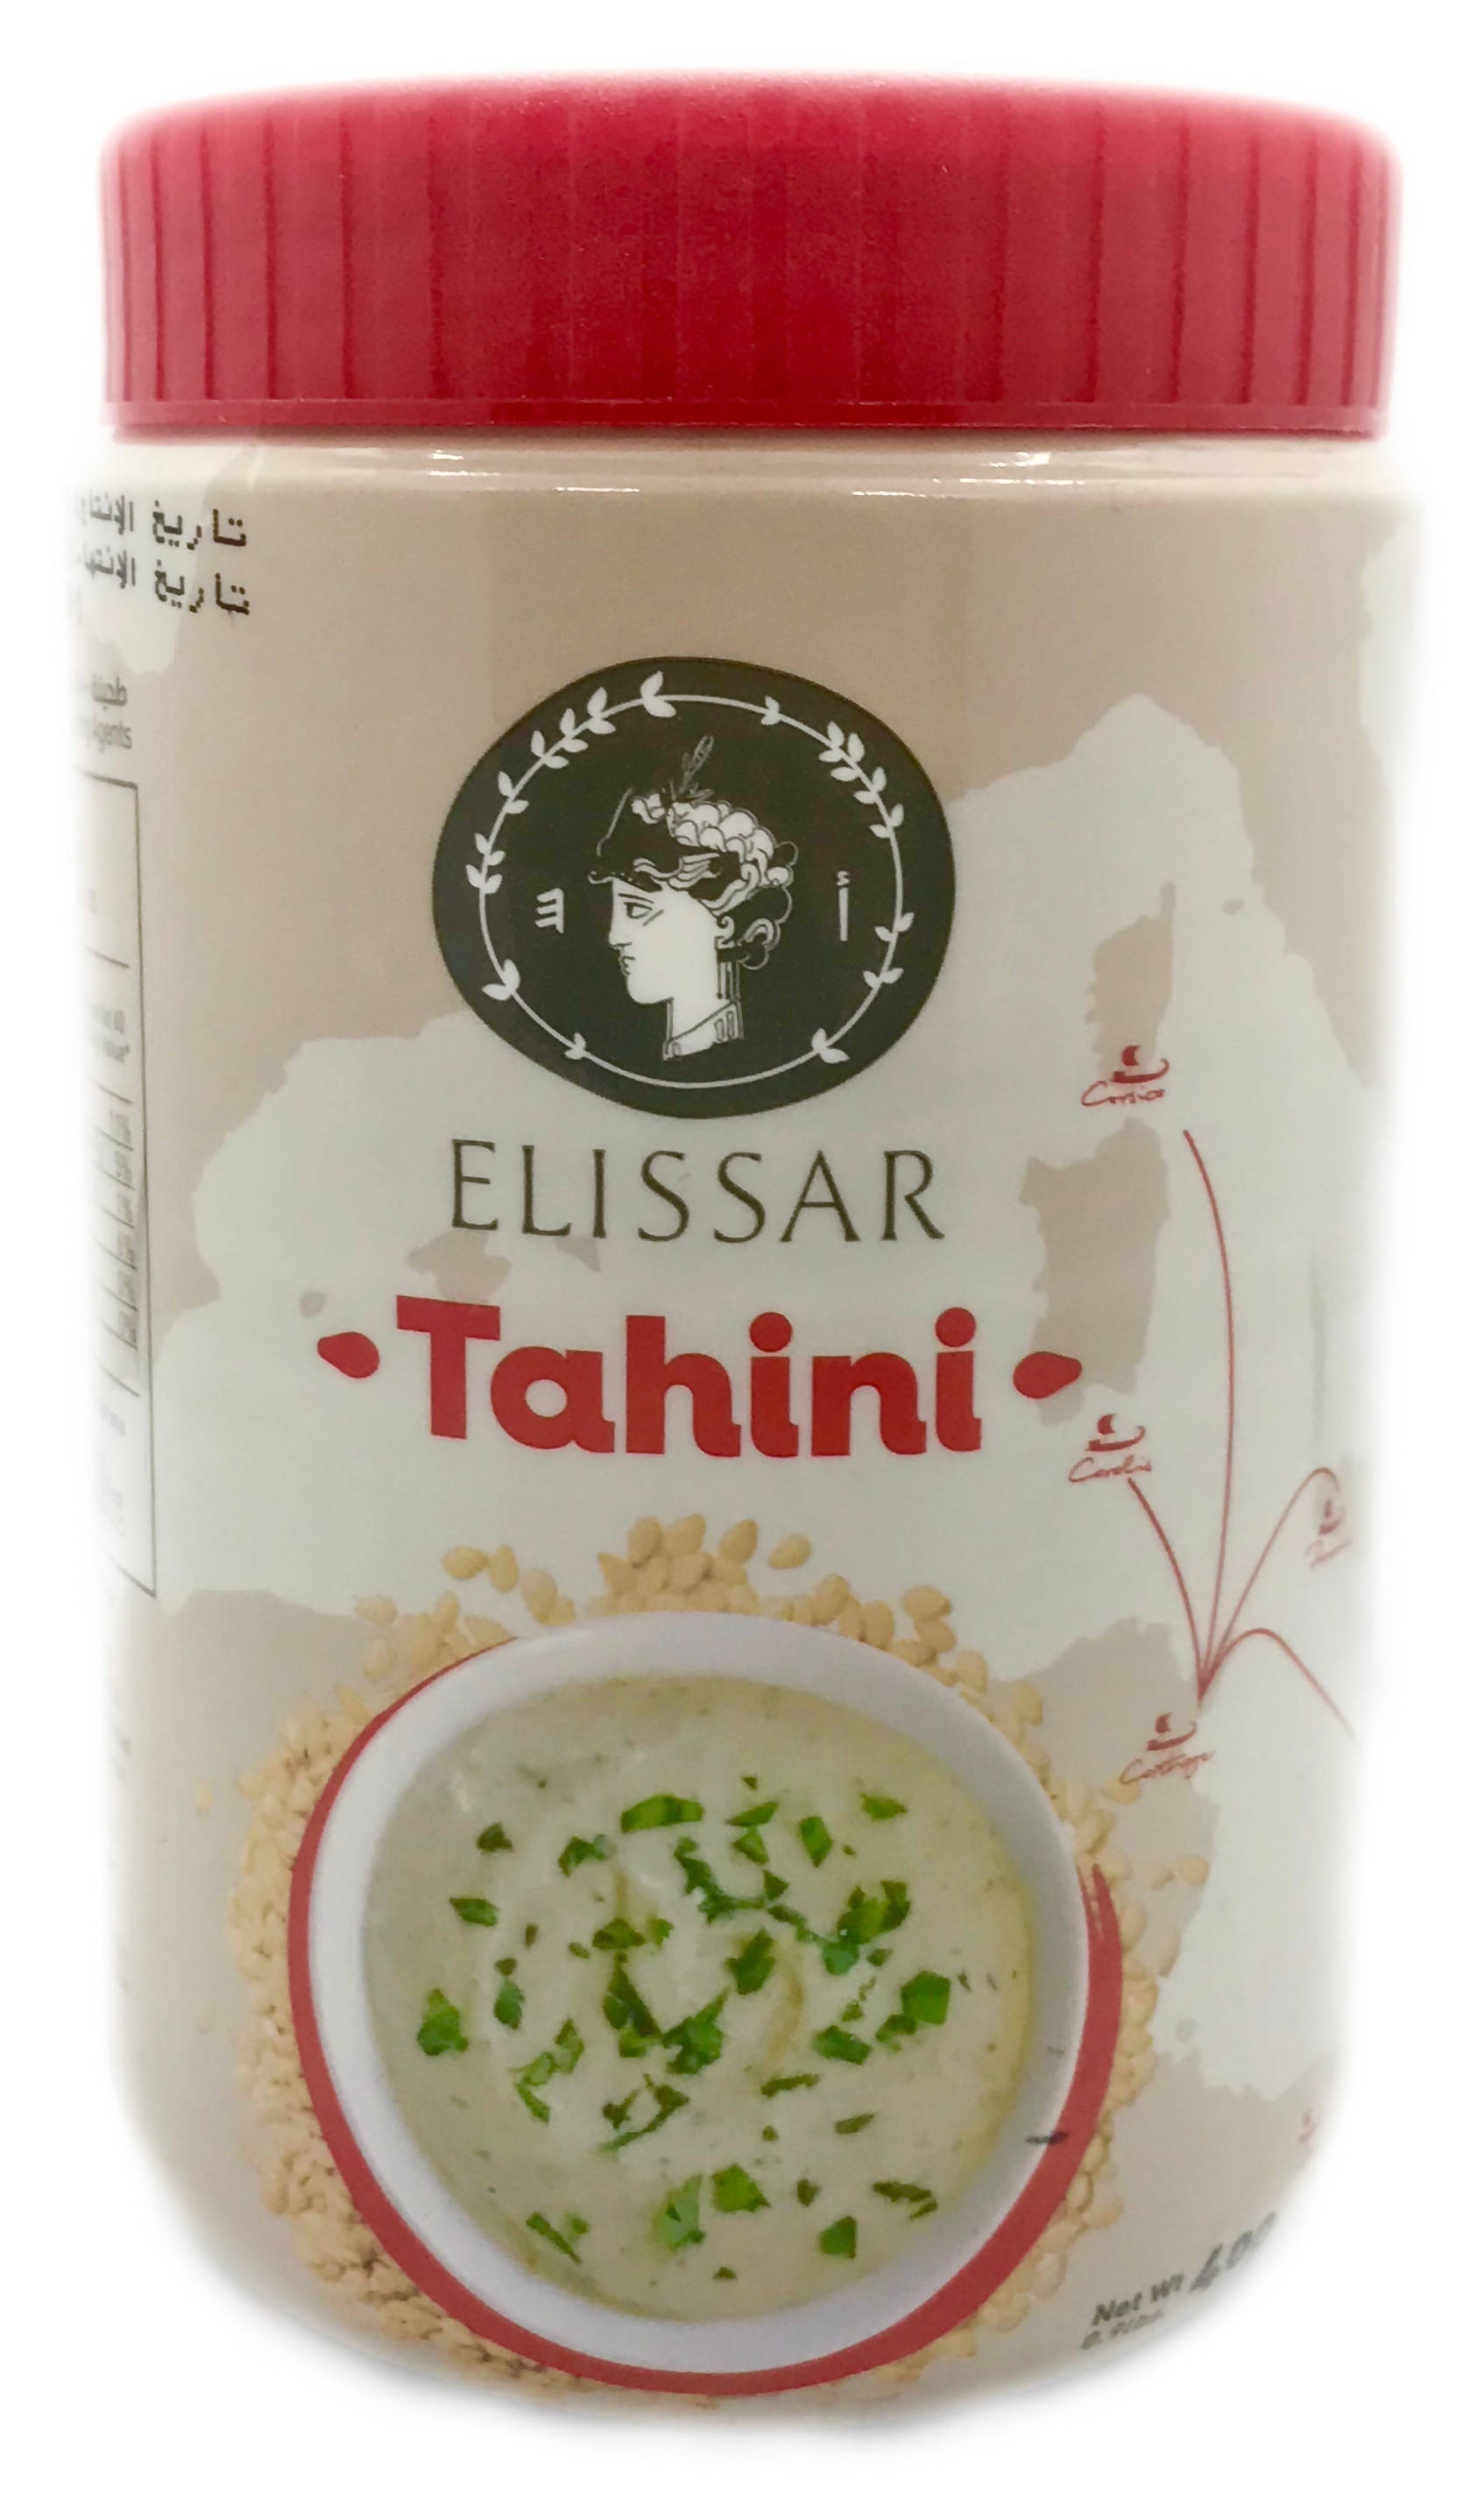 Elissar 400g Natural Tahini Jar